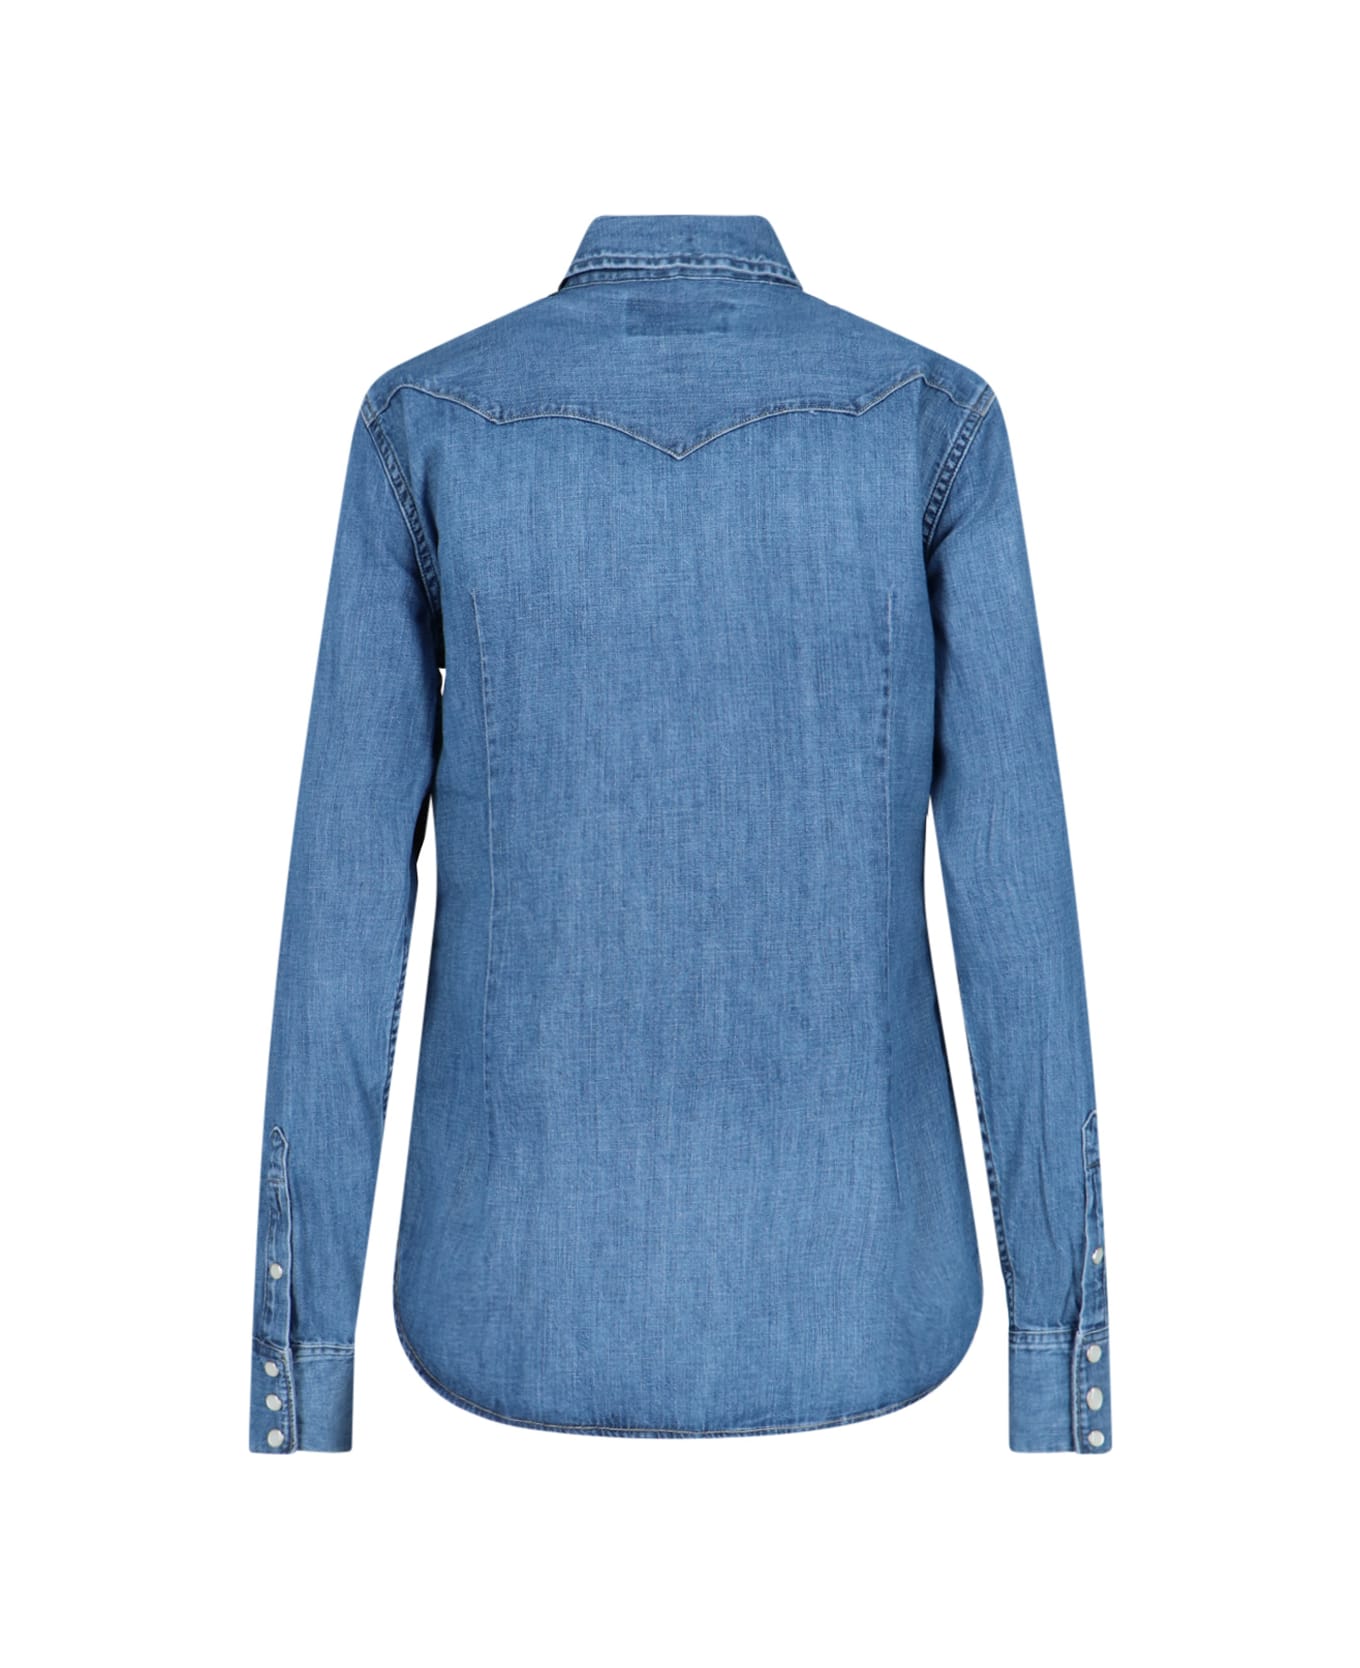 Polo Ralph Lauren Denim Shirt - blue